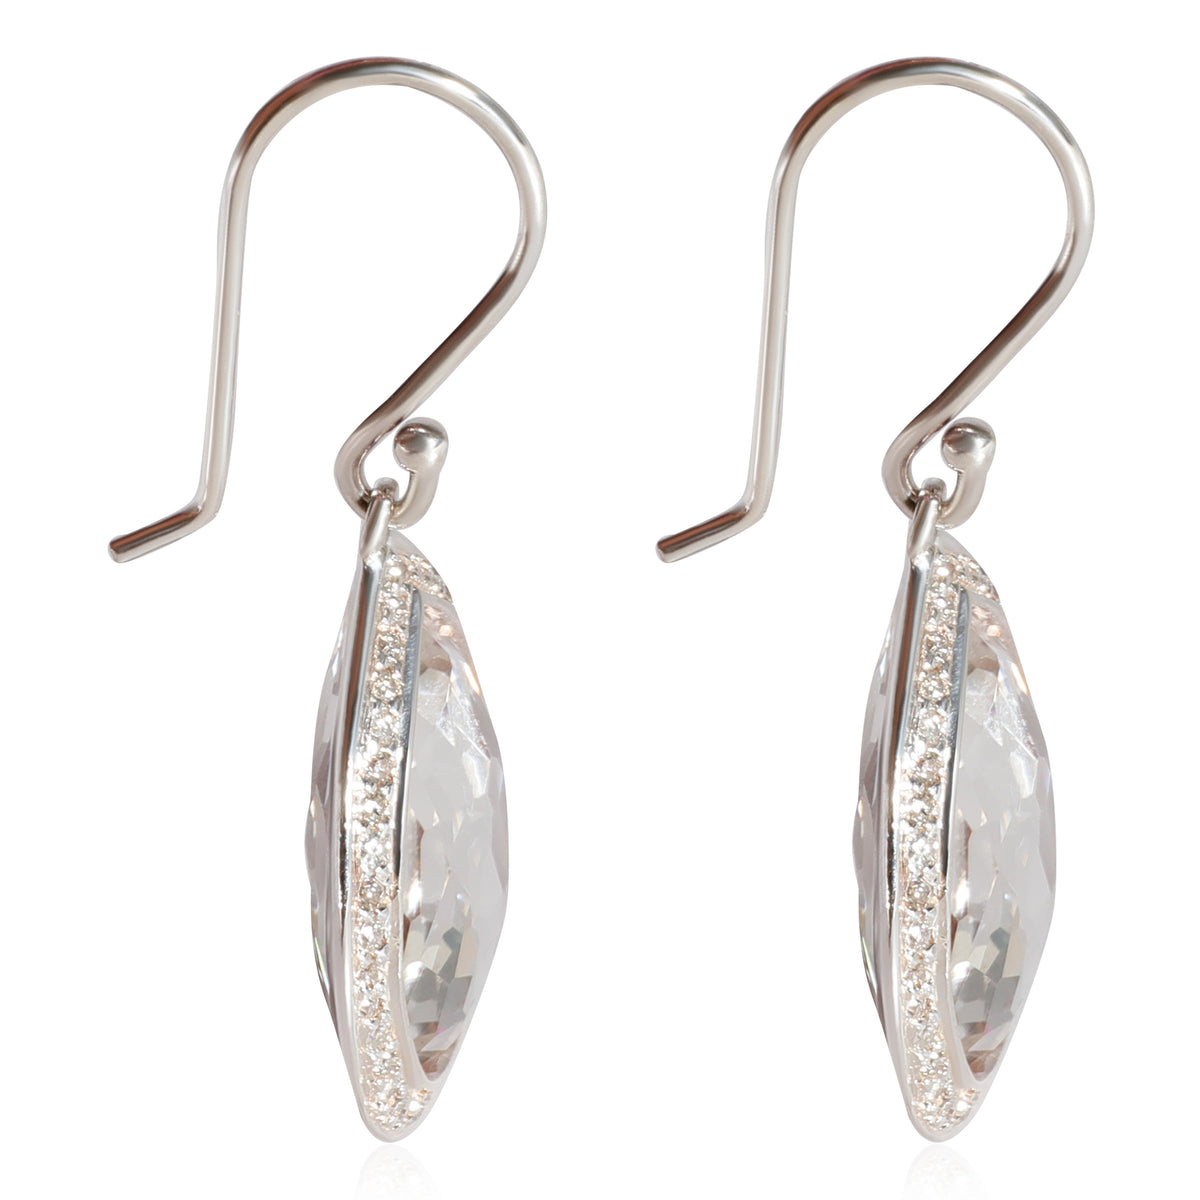 Ippolita Rock Candy Quartz Diamond Earrings in 925 Sterling Silver 0.4 CTW